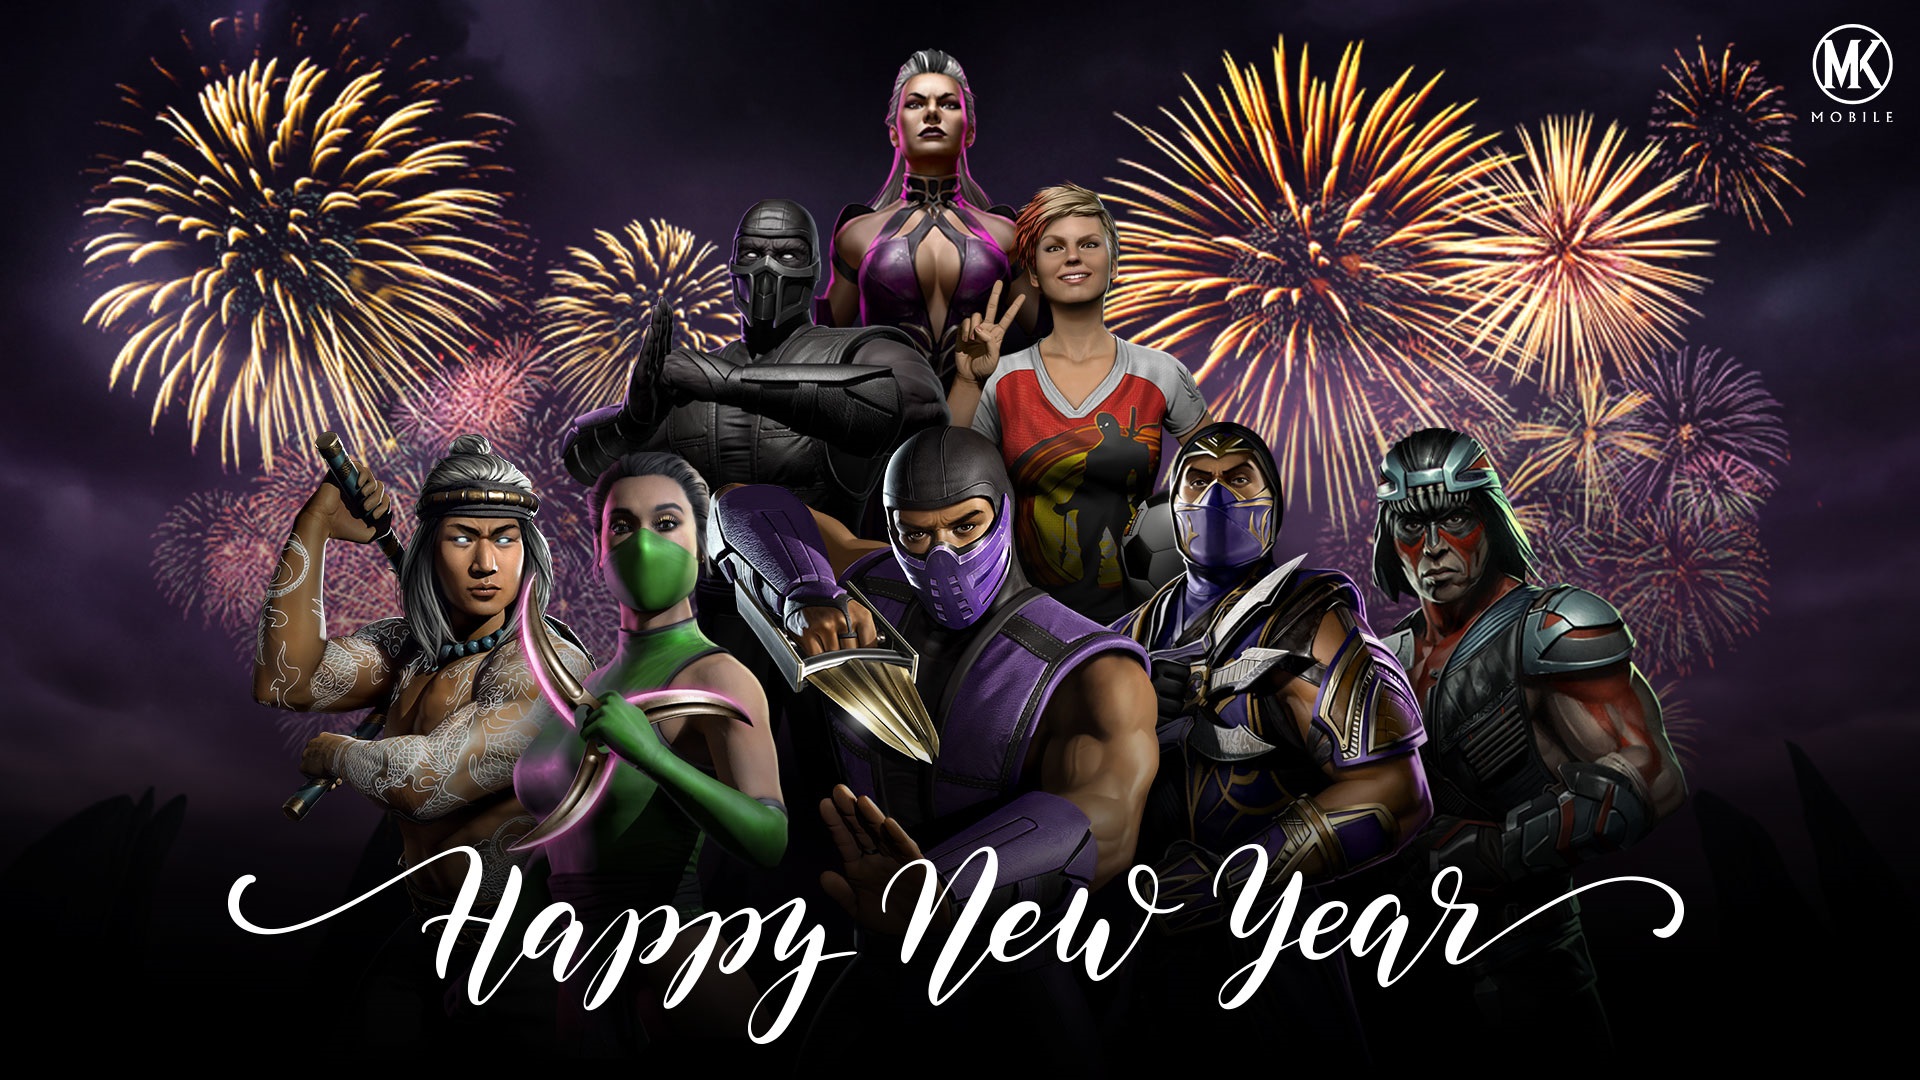 Wallpaper Happy New Year Mortal Kombat Games Fan Site